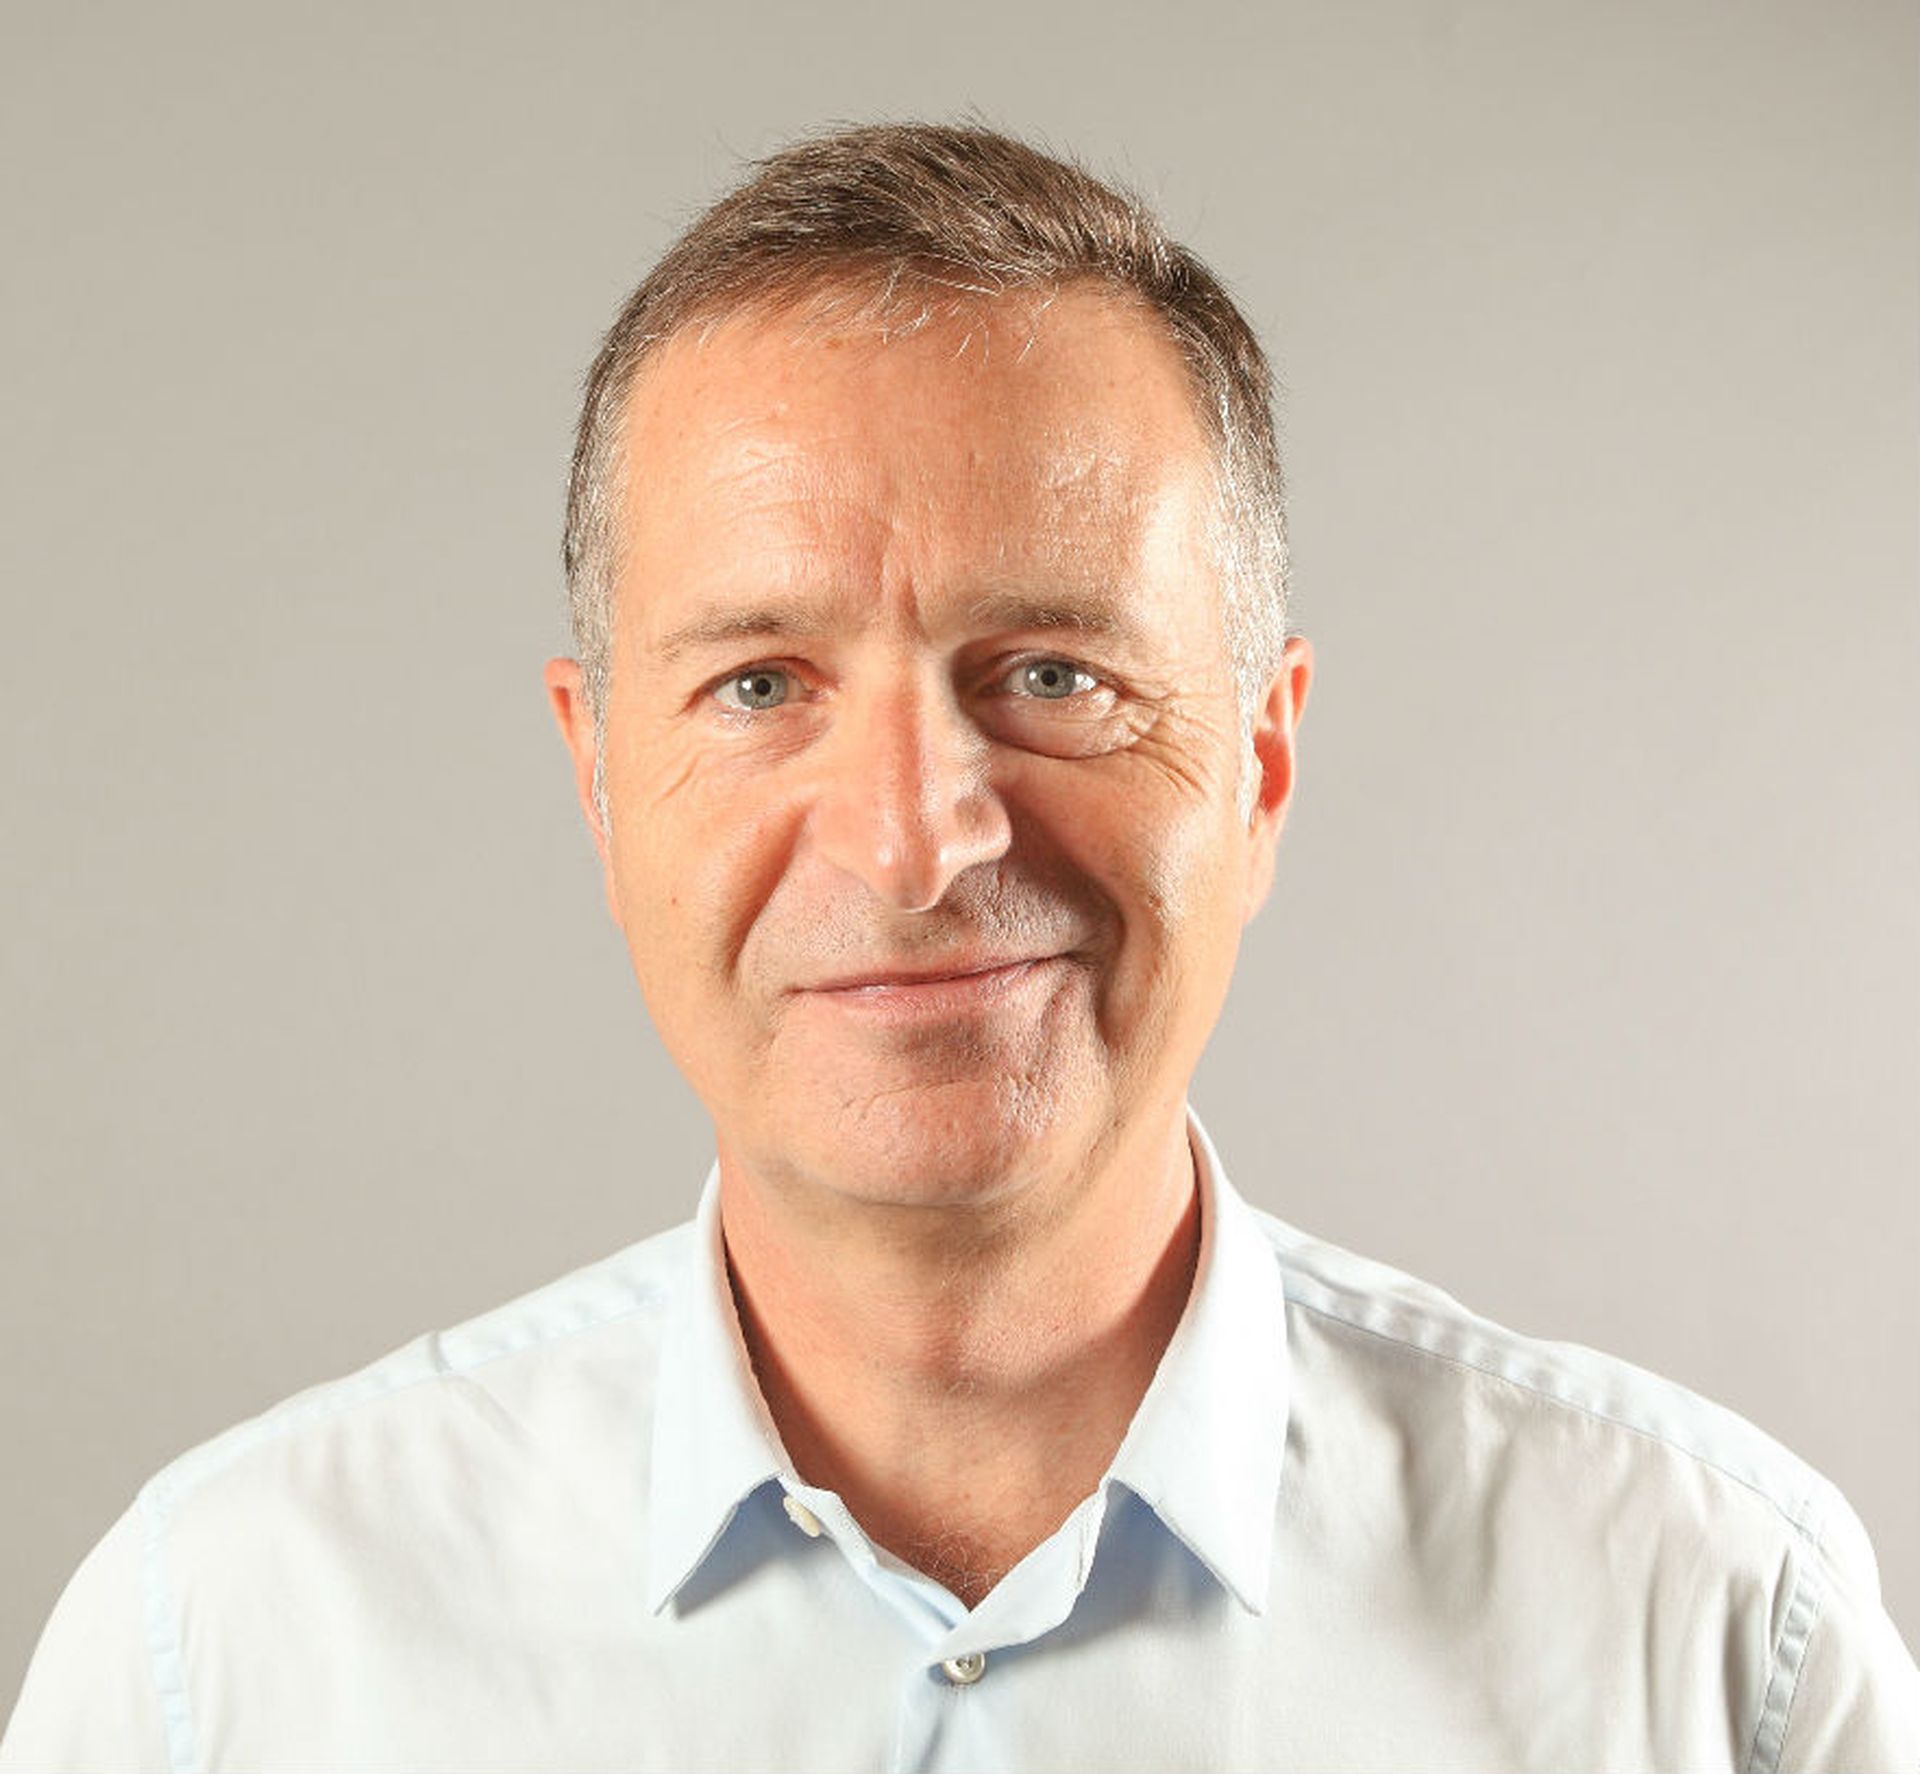 François Amigorena, CEO, IS Decisions